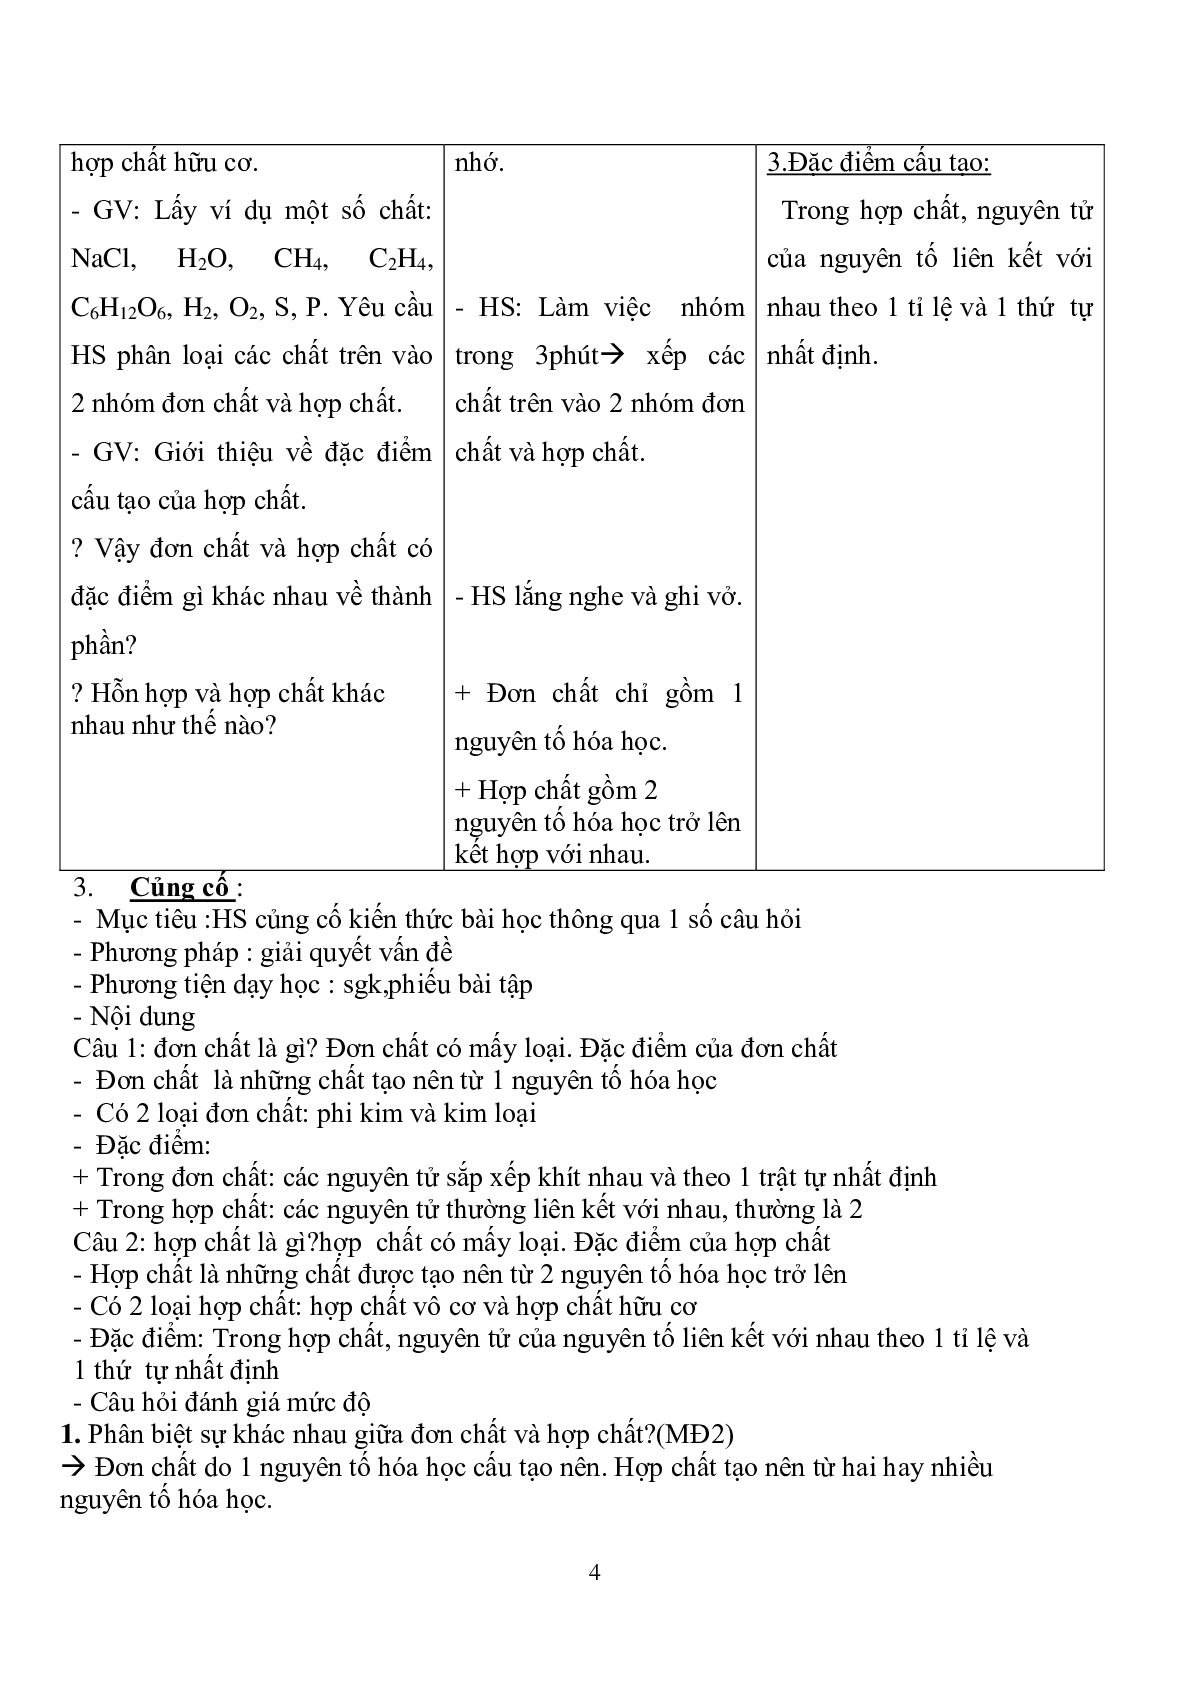 Giáo án hóa học 8 bài 6: đơn chất và hợp chất- phân tử mới nhất (trang 4)